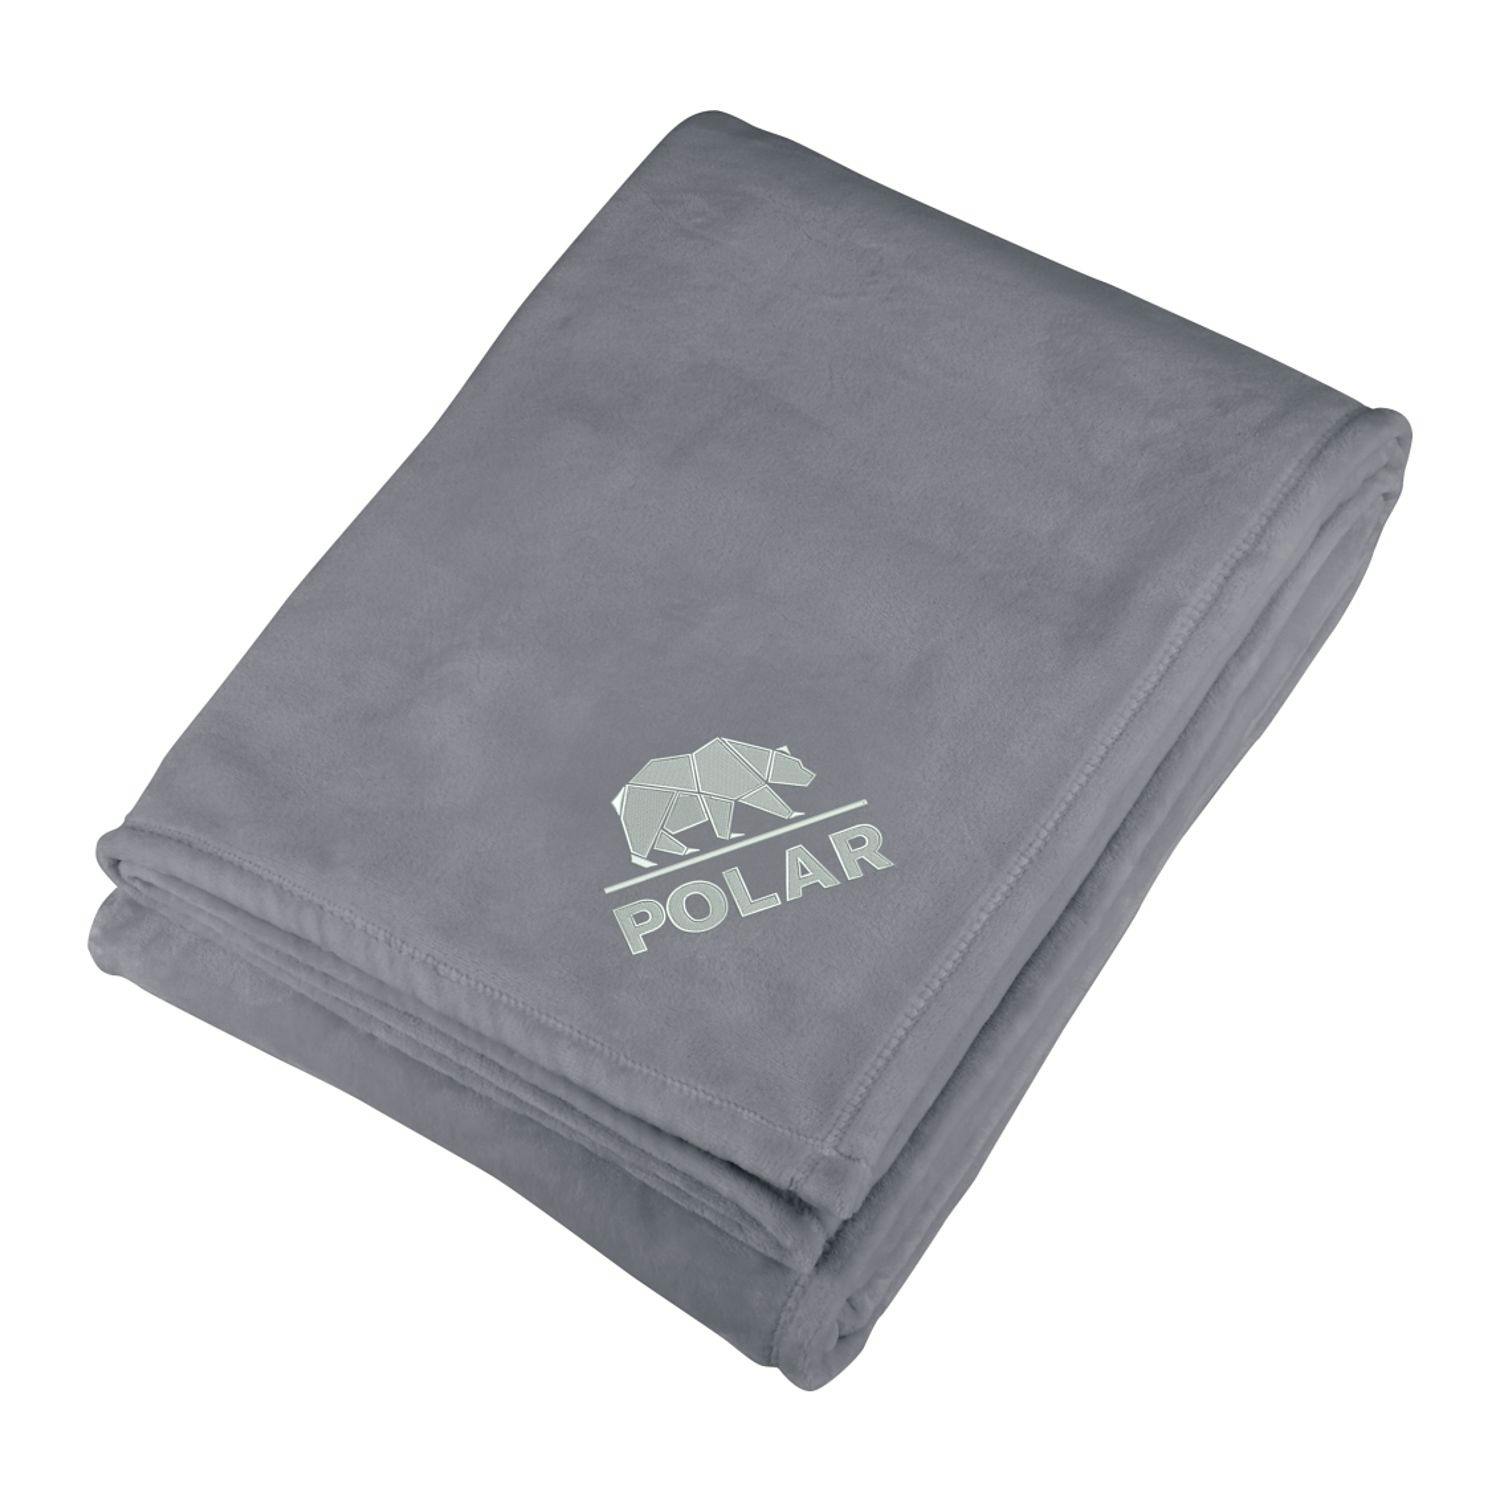 Oversized Ultra Plush Throw Blanket - additional Image 1